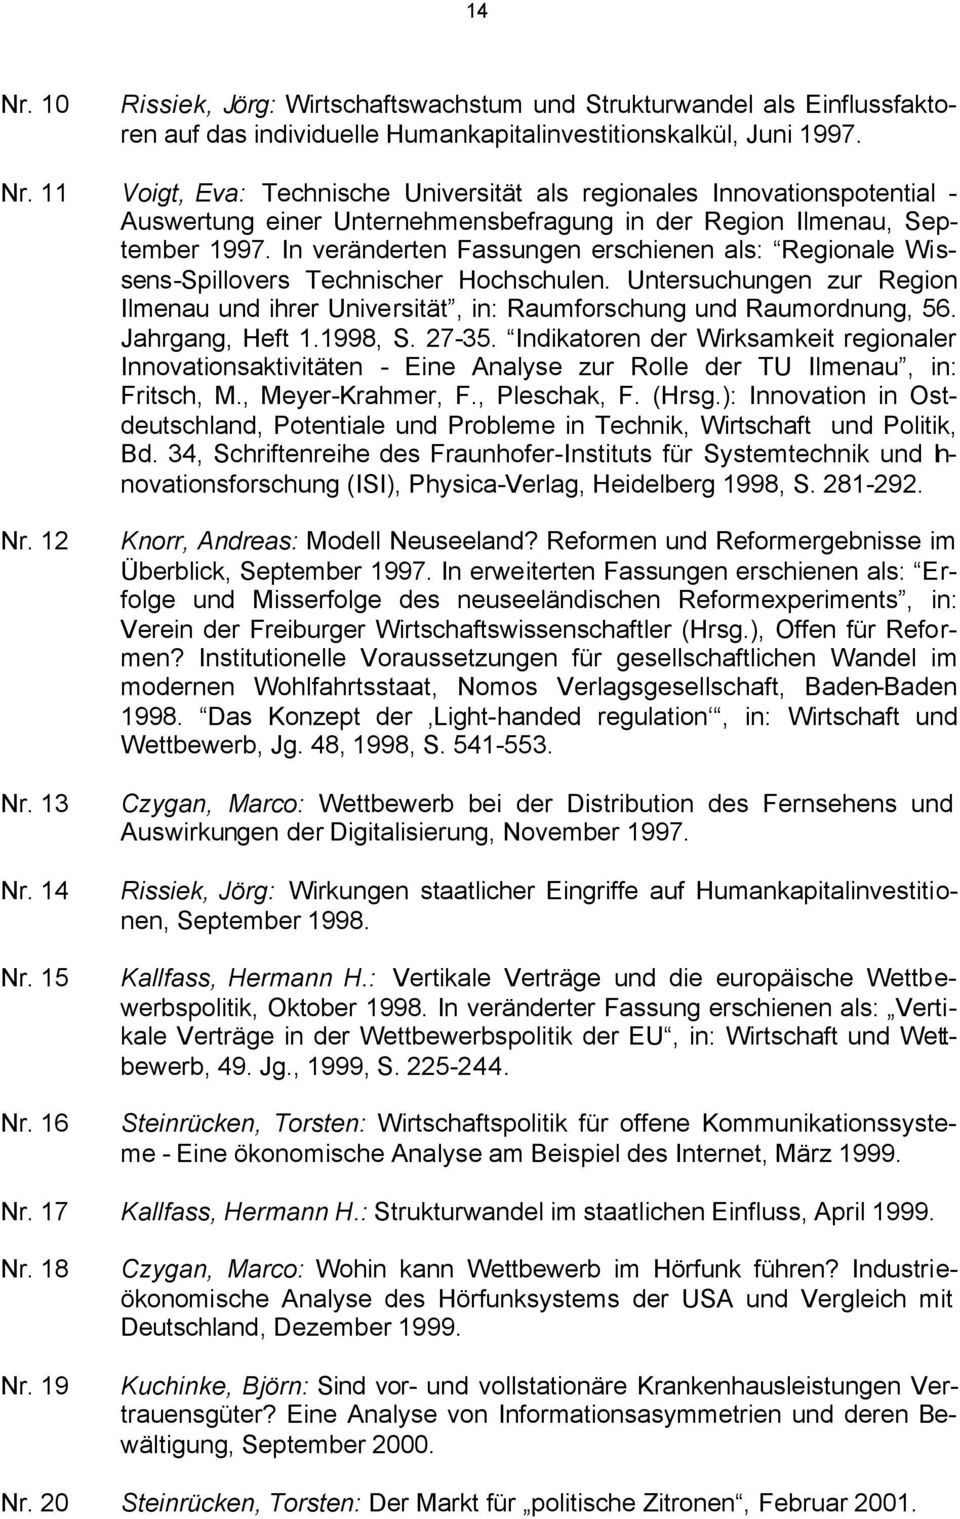 Jahrgang, Heft 1.1998, S. 27-35. Indikatoren der Wirksamkeit regionaler Innovationsaktivitäten - Eine Analyse zur Rolle der TU Ilmenau, in: Fritsch, M., Meyer-Krahmer, F., Pleschak, F. (Hrsg.